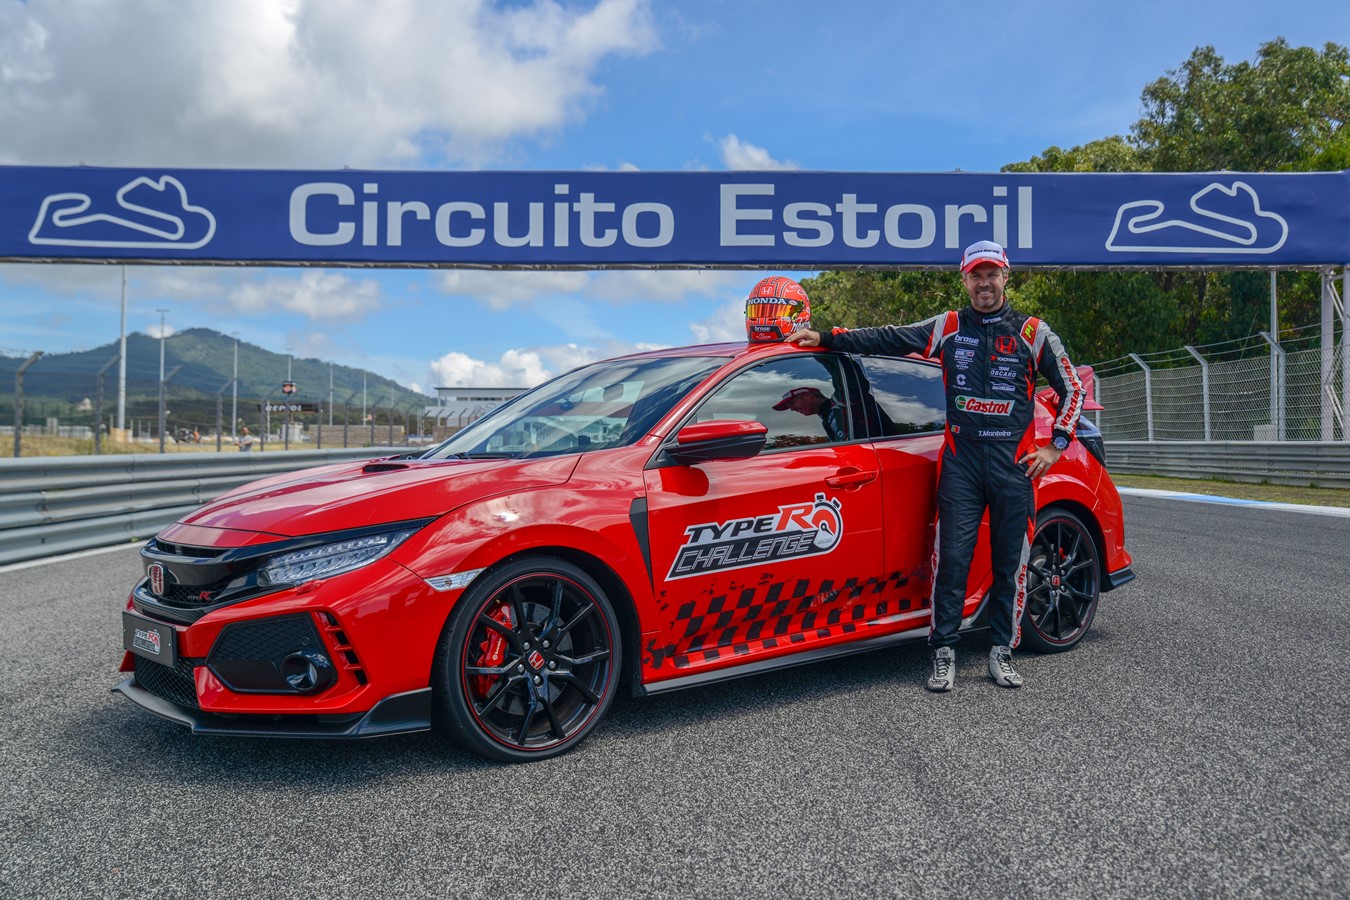 Honda Civic Type R fissa un nuovo record sul circuito di Estoril con Tiago Monteiro